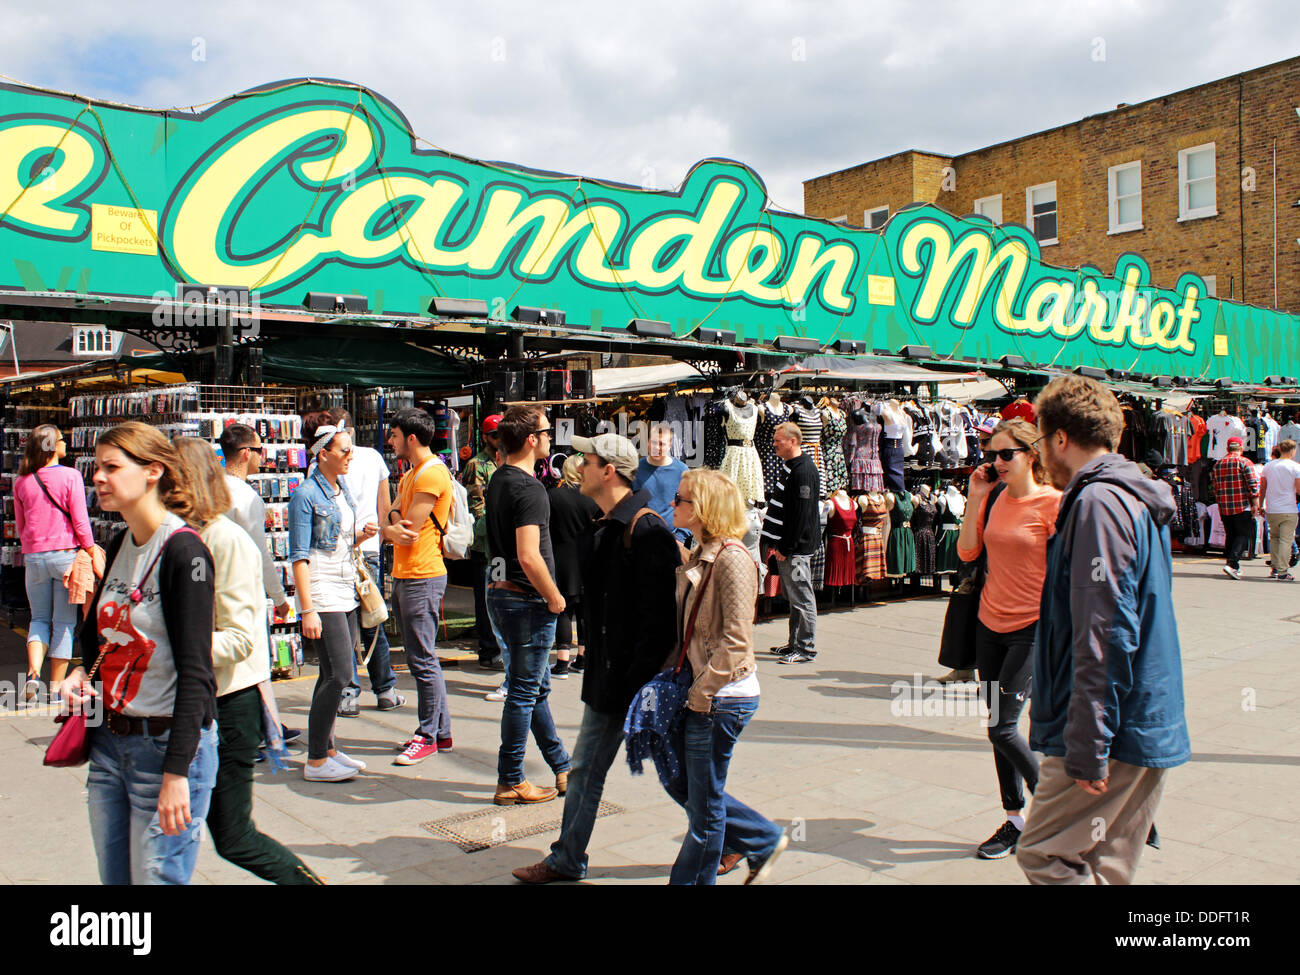 Le marché de Camden, Camden Town, Londres, Angleterre, Royaume-Uni Banque D'Images